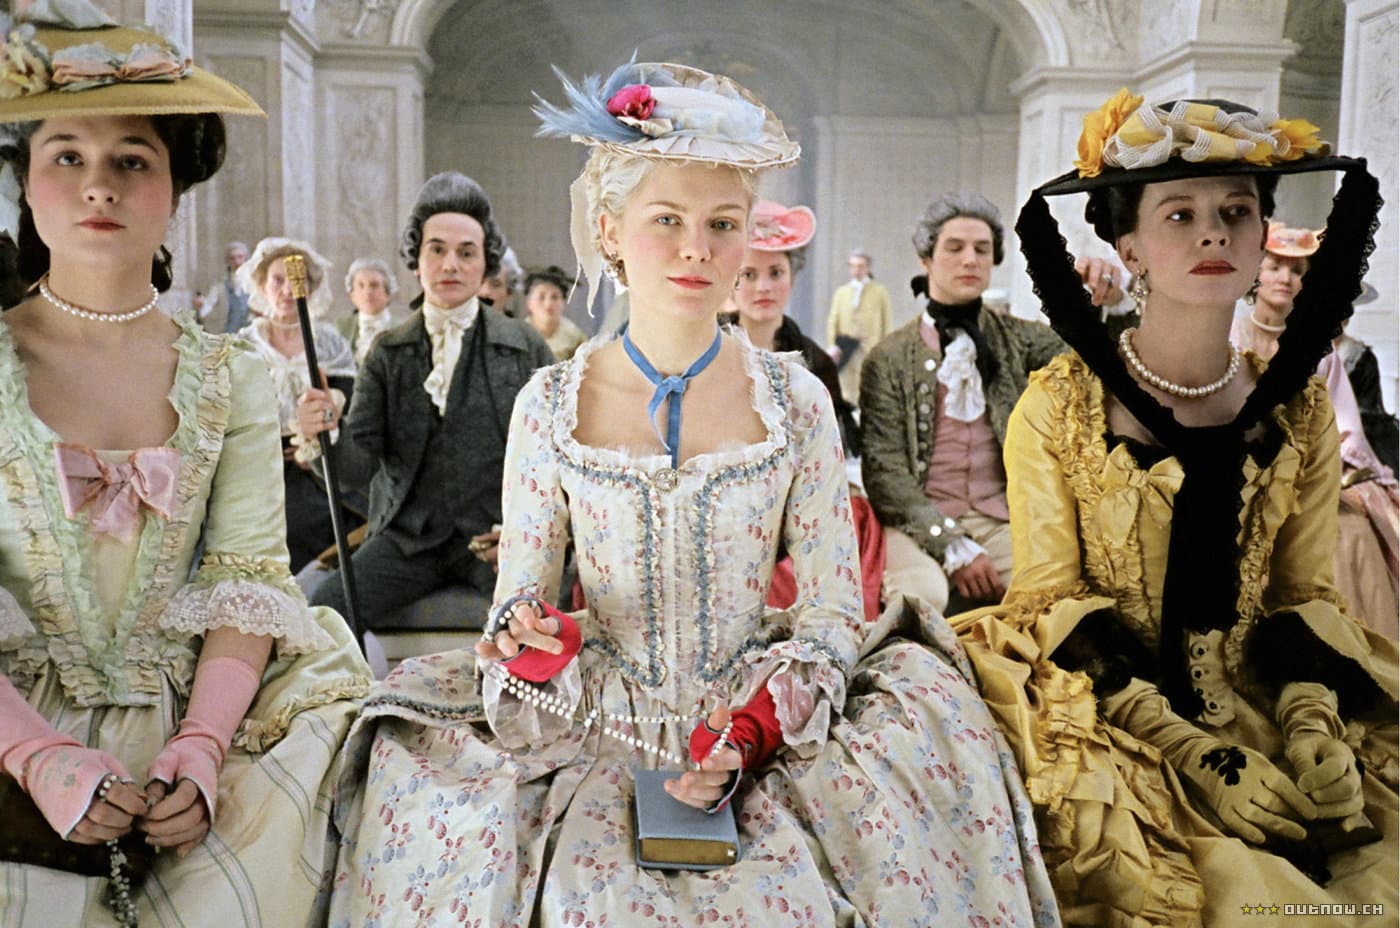 Kirsten Dunst as Marie Antoinette in the movie version